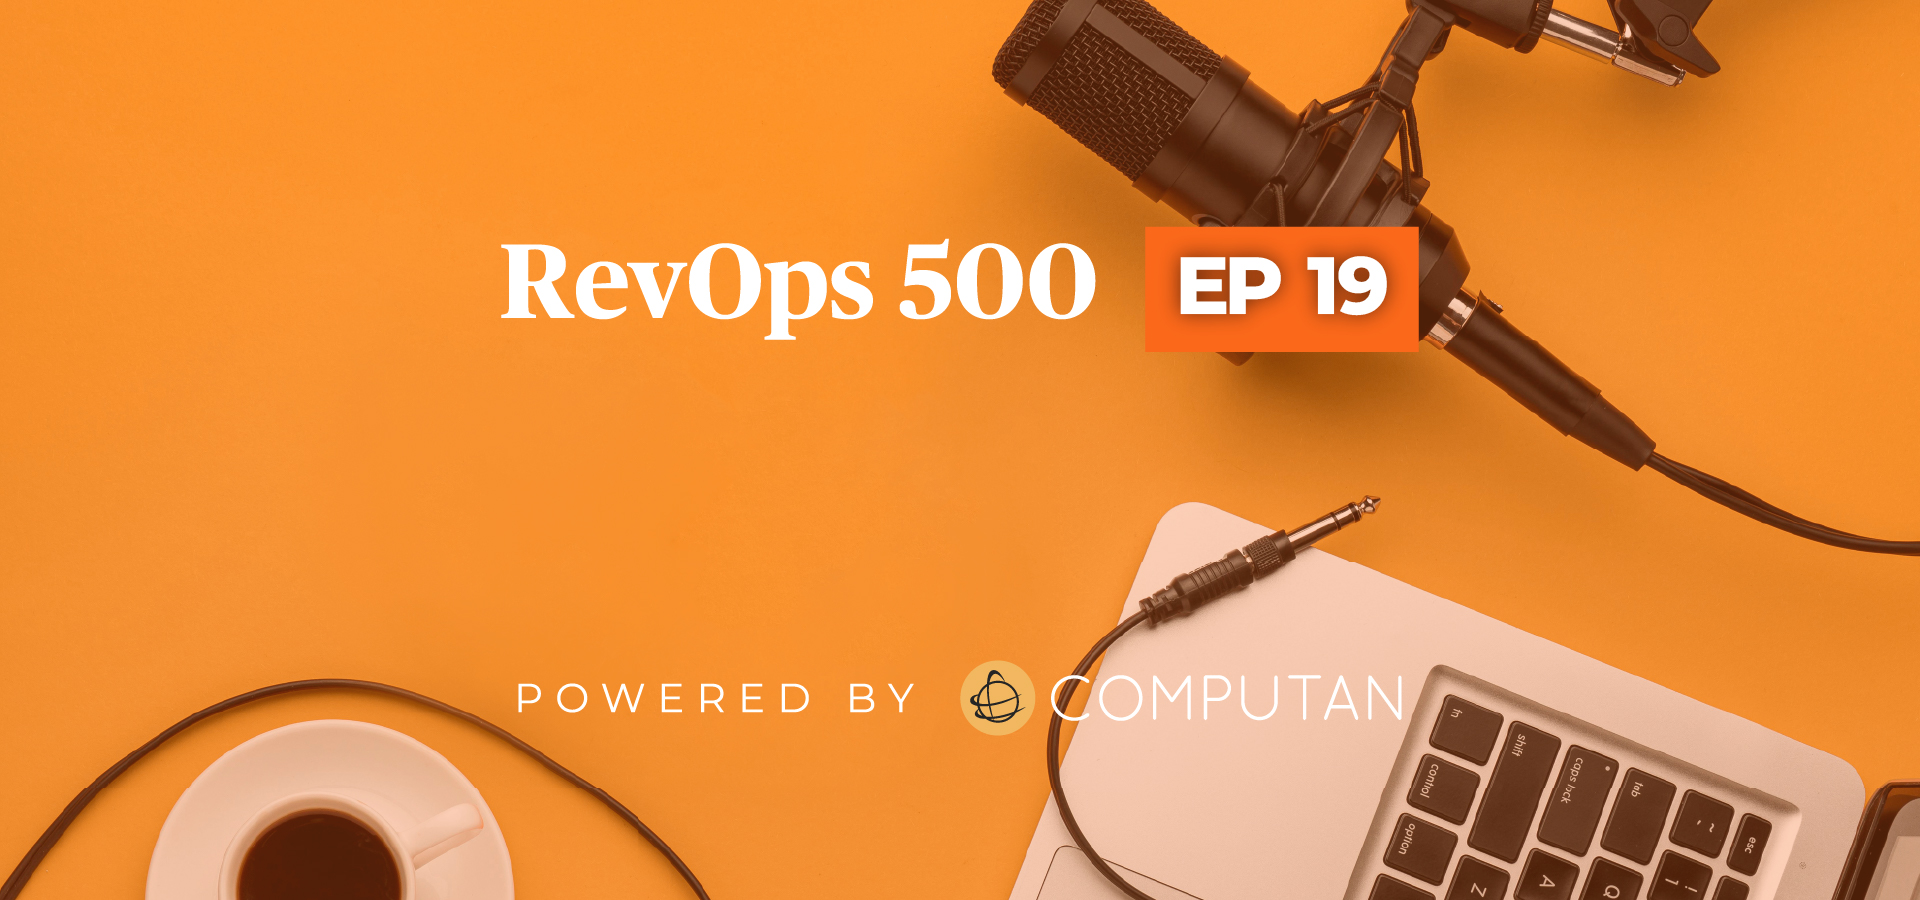 RevOps Episode 19